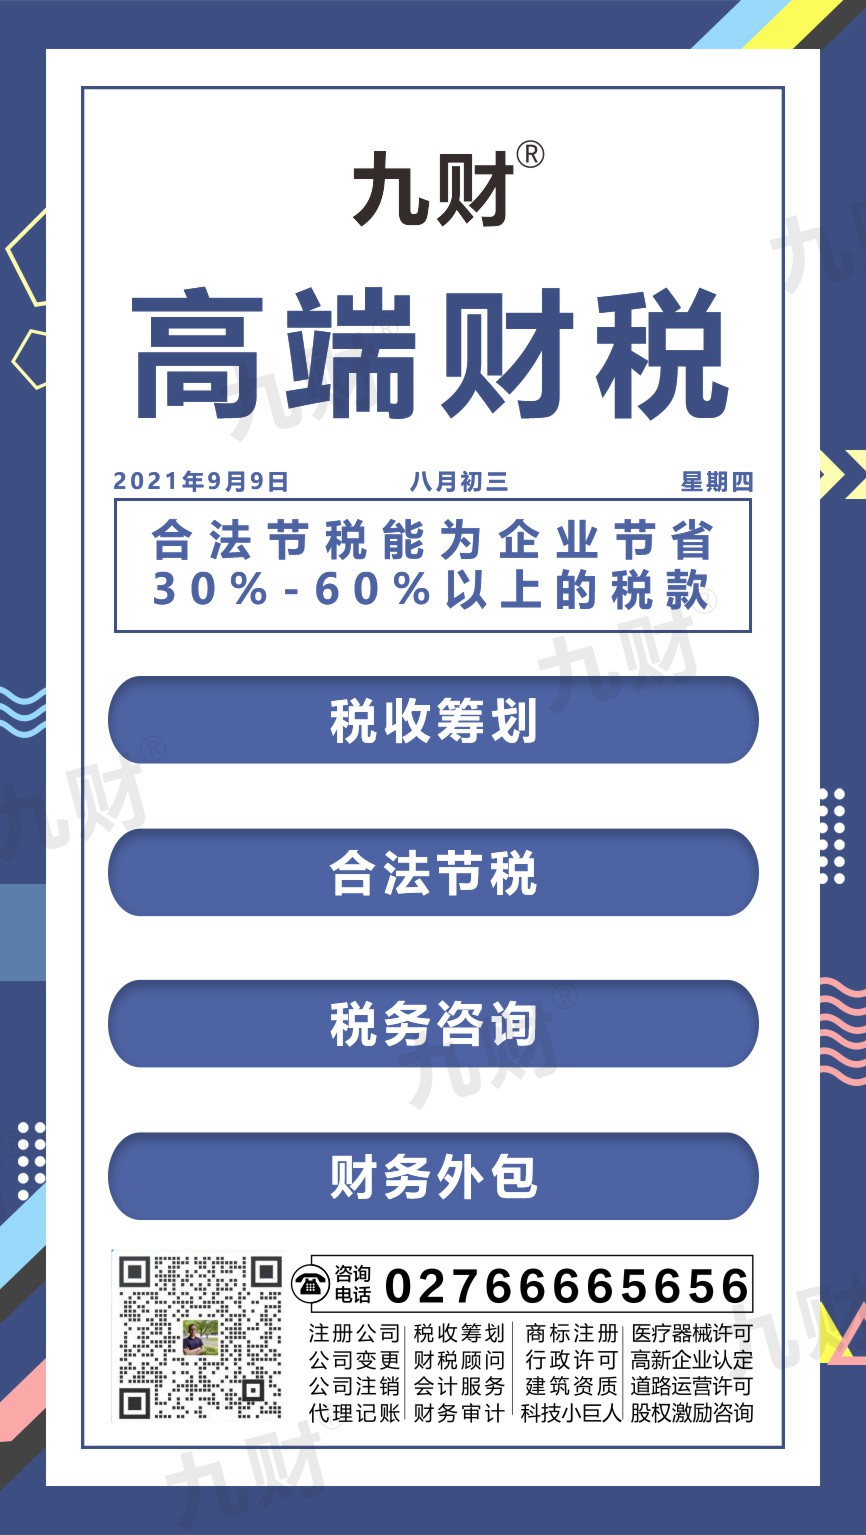 硚口区武昌股东变更网上如何填写申请表模板